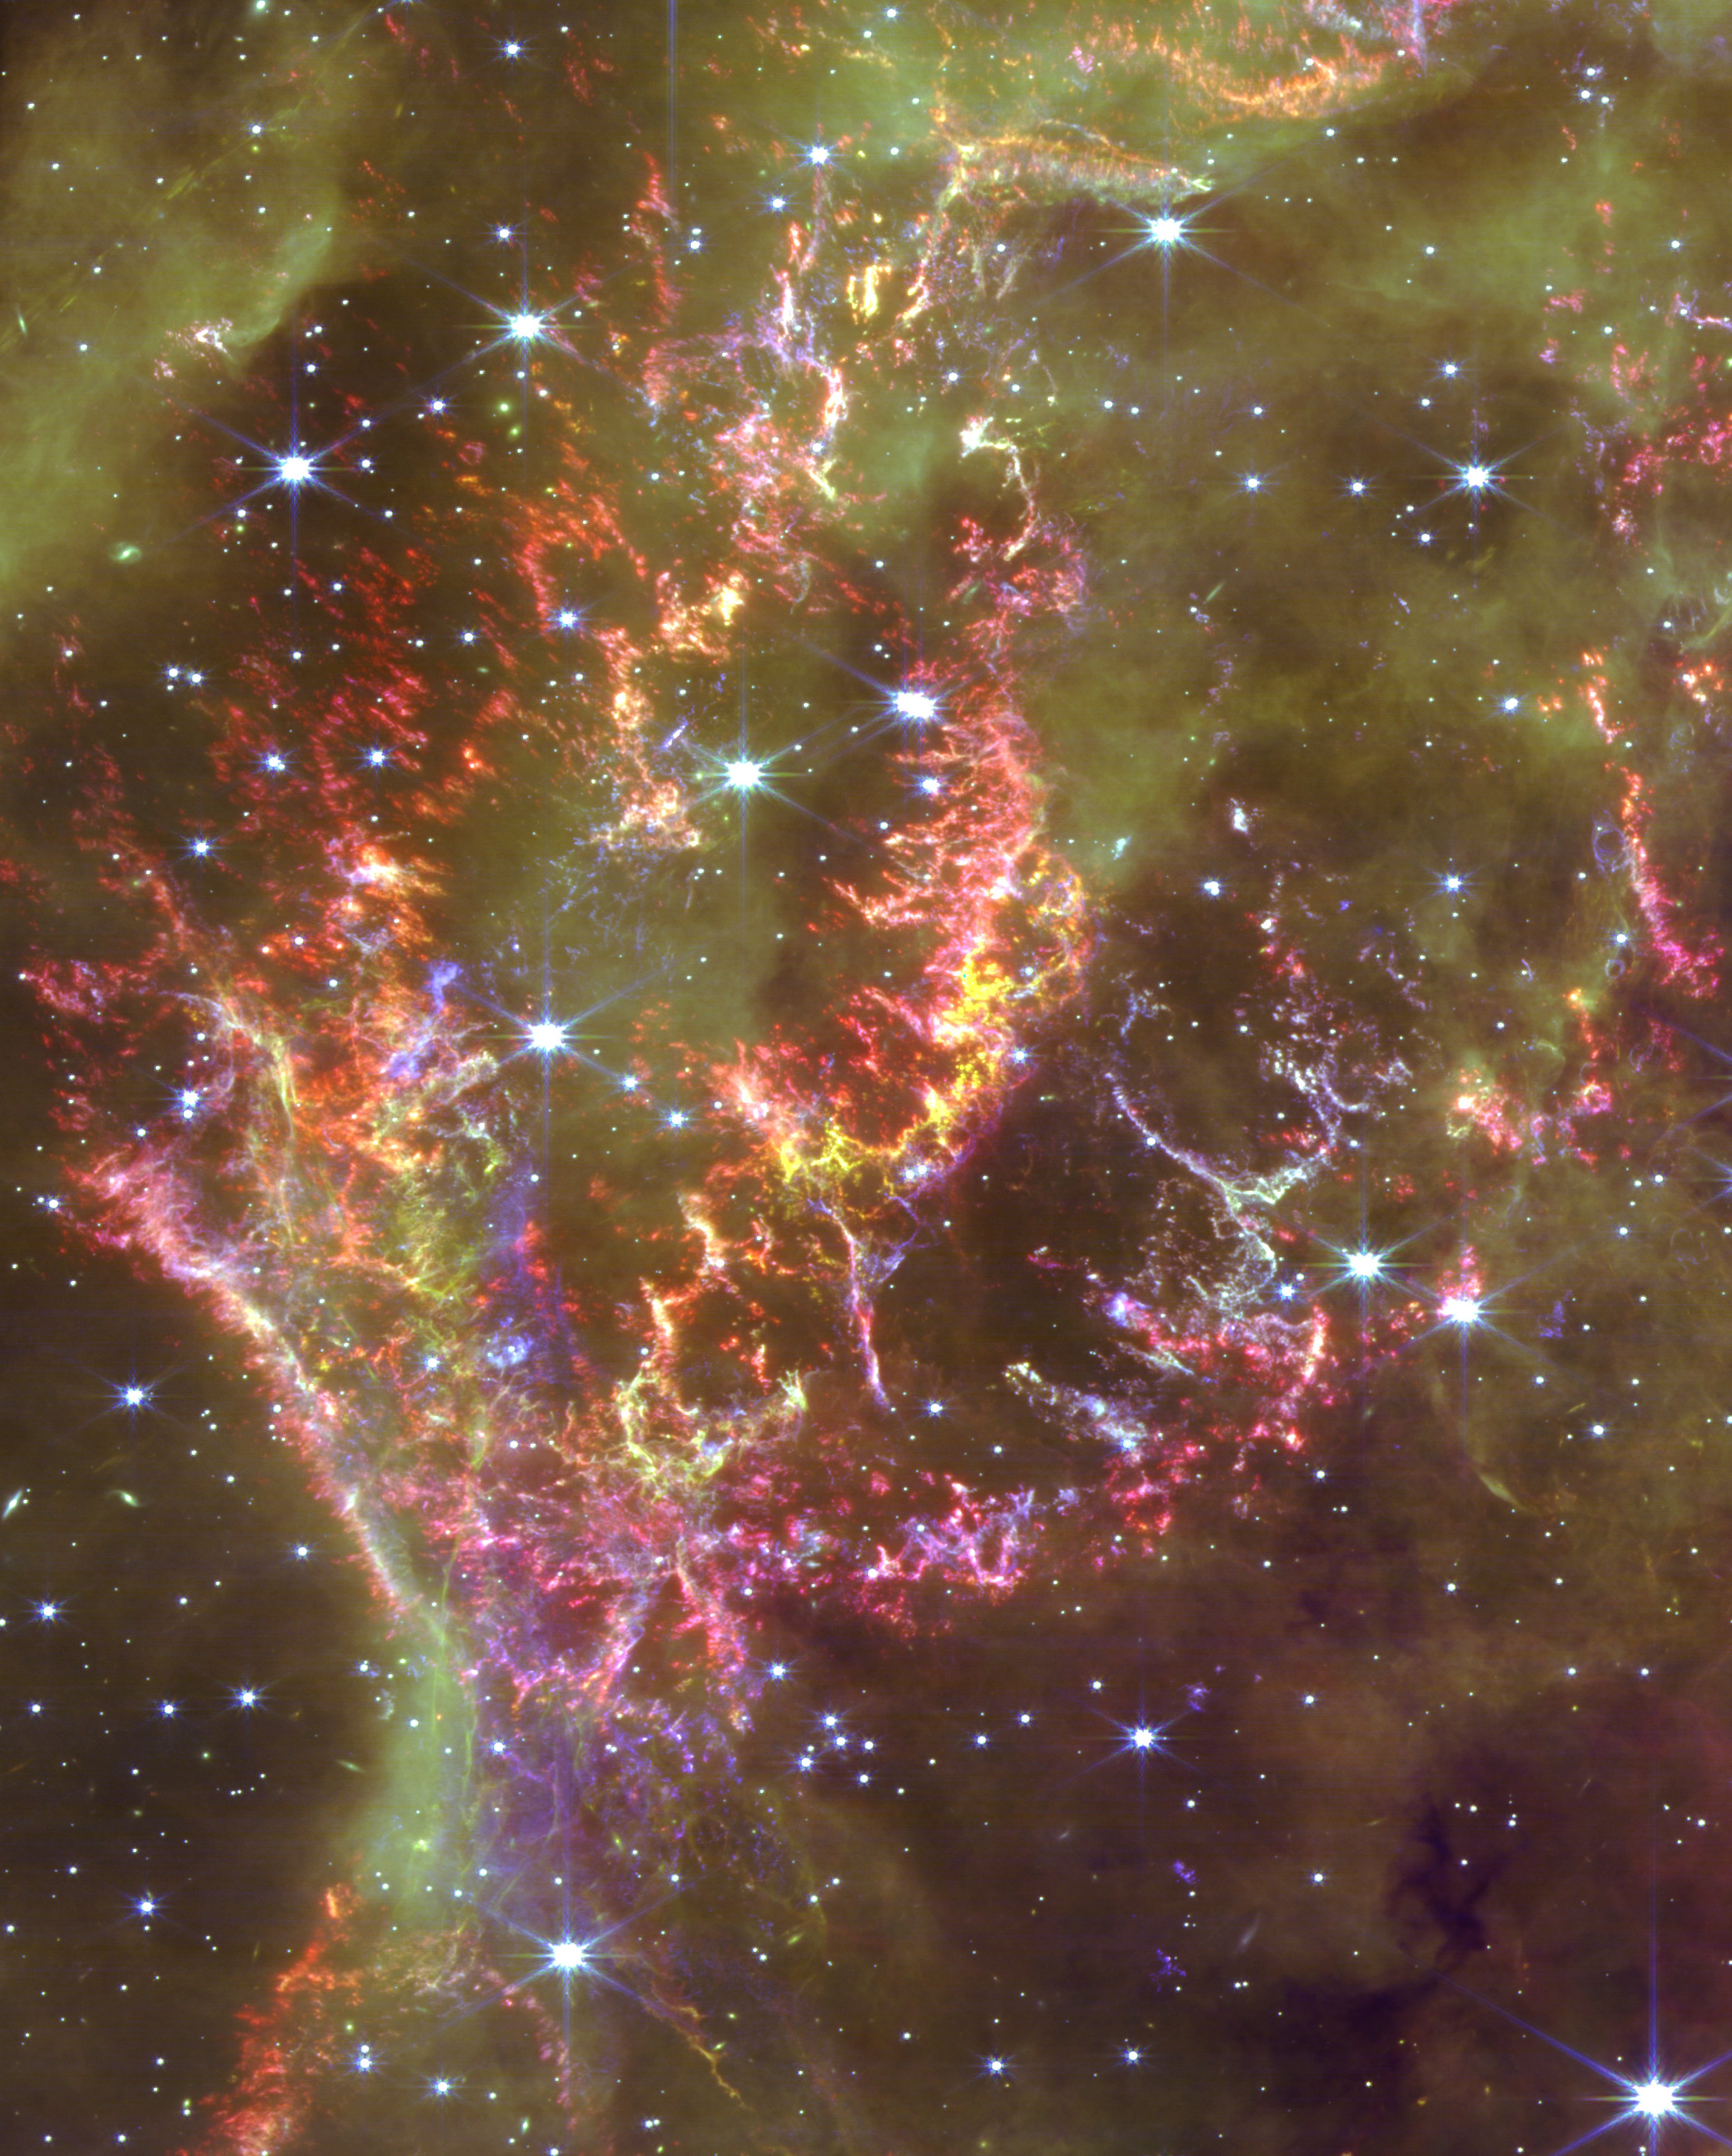 NASA image of JWST Cas A, a supernova remnant showcasing stars and nebulae.